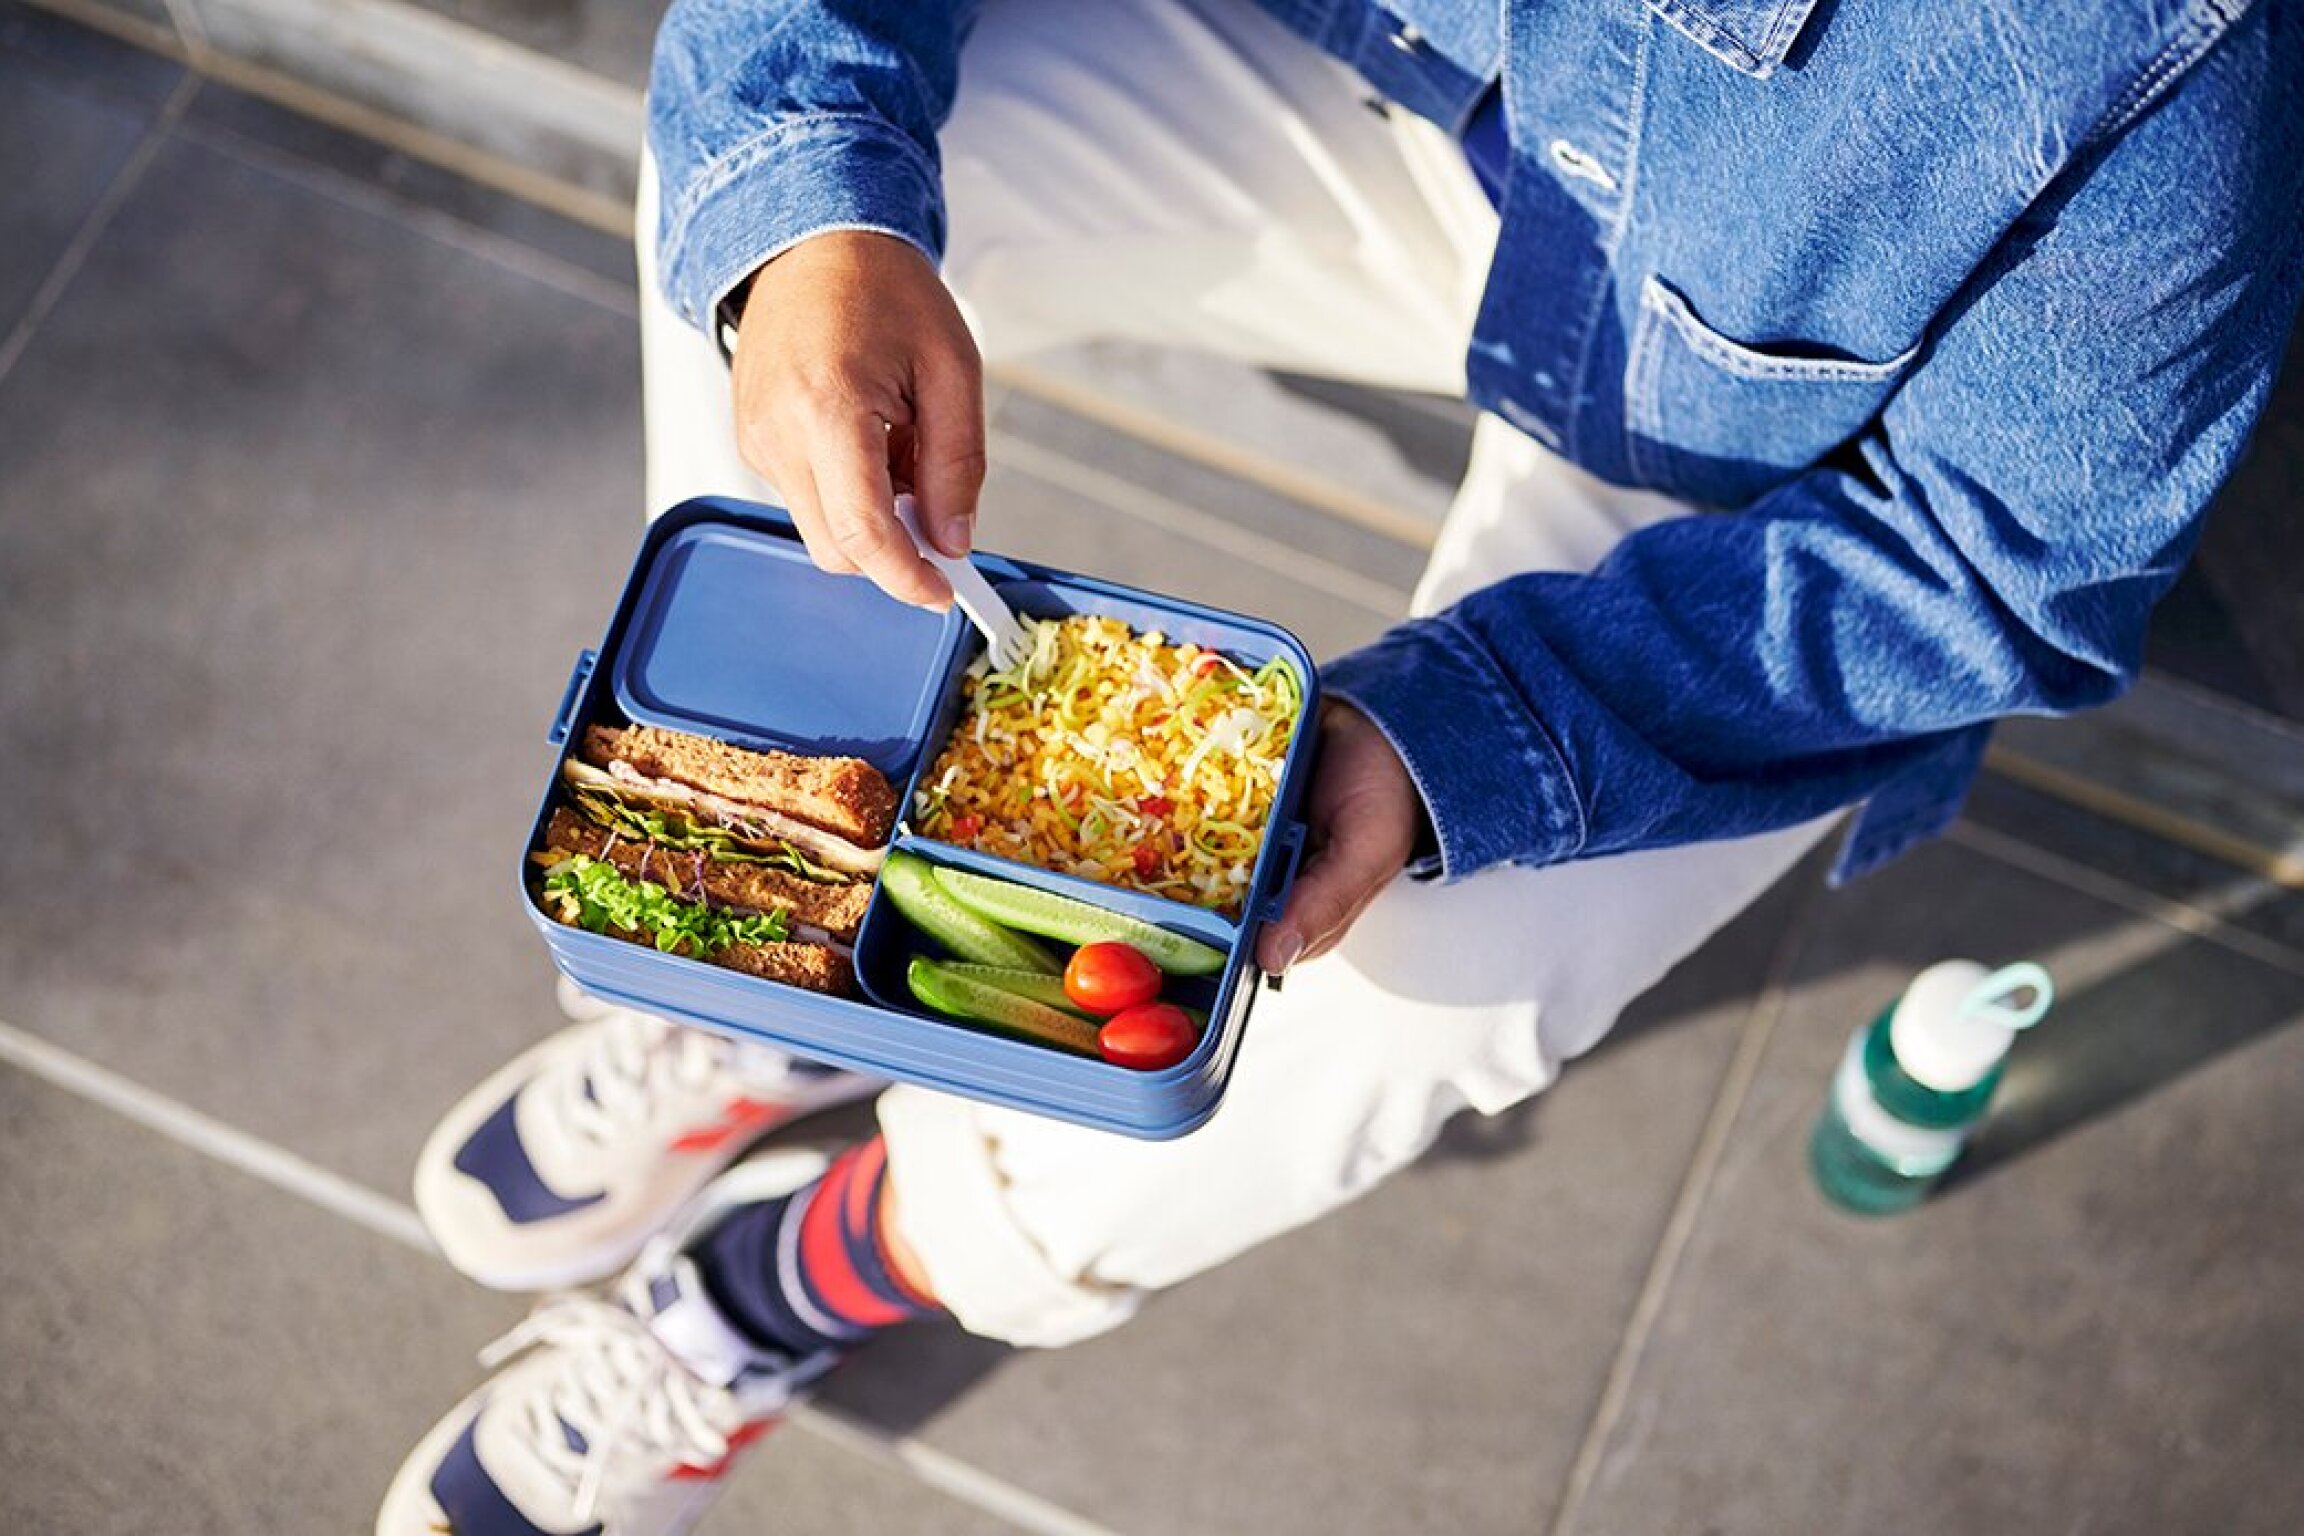 Bento lunch box Take a Break large - Nordic denim